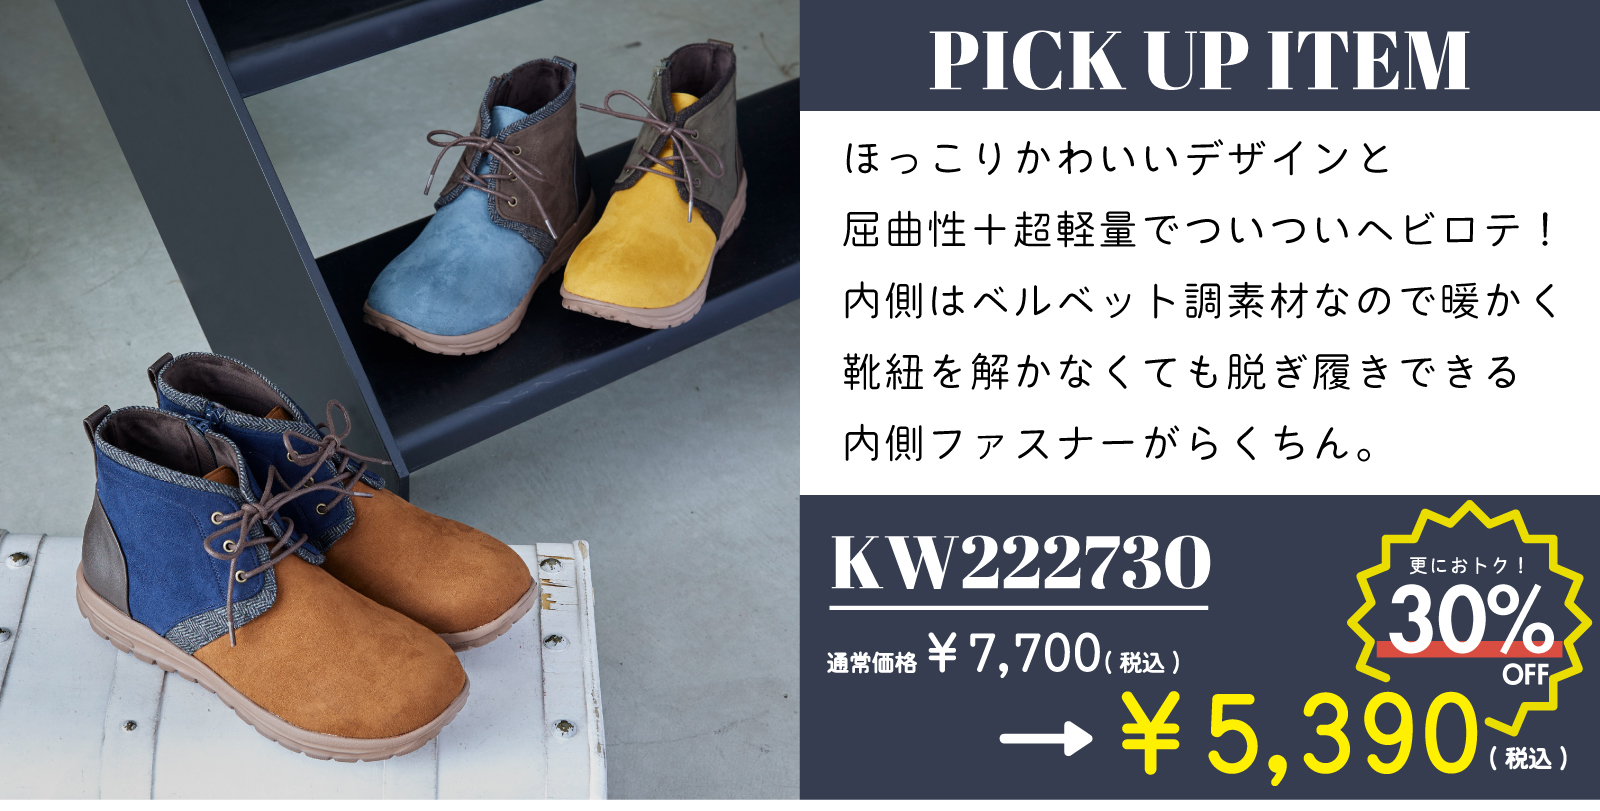 【PICK UP ITEM】商品番号：KW222730 通常価格¥7,700(税込)→SALE価格¥5,390(税込) ほっこりかわいいデザインと、屈曲性+超軽量でついついヘビロテ間違いなし！内側はベルベット調素材なので暖かく、靴ひもを解かなくても脱ぎ履きできる内側ファスナーが楽ちん。商品詳細ページはこちらをクリック、またはタップしてください。